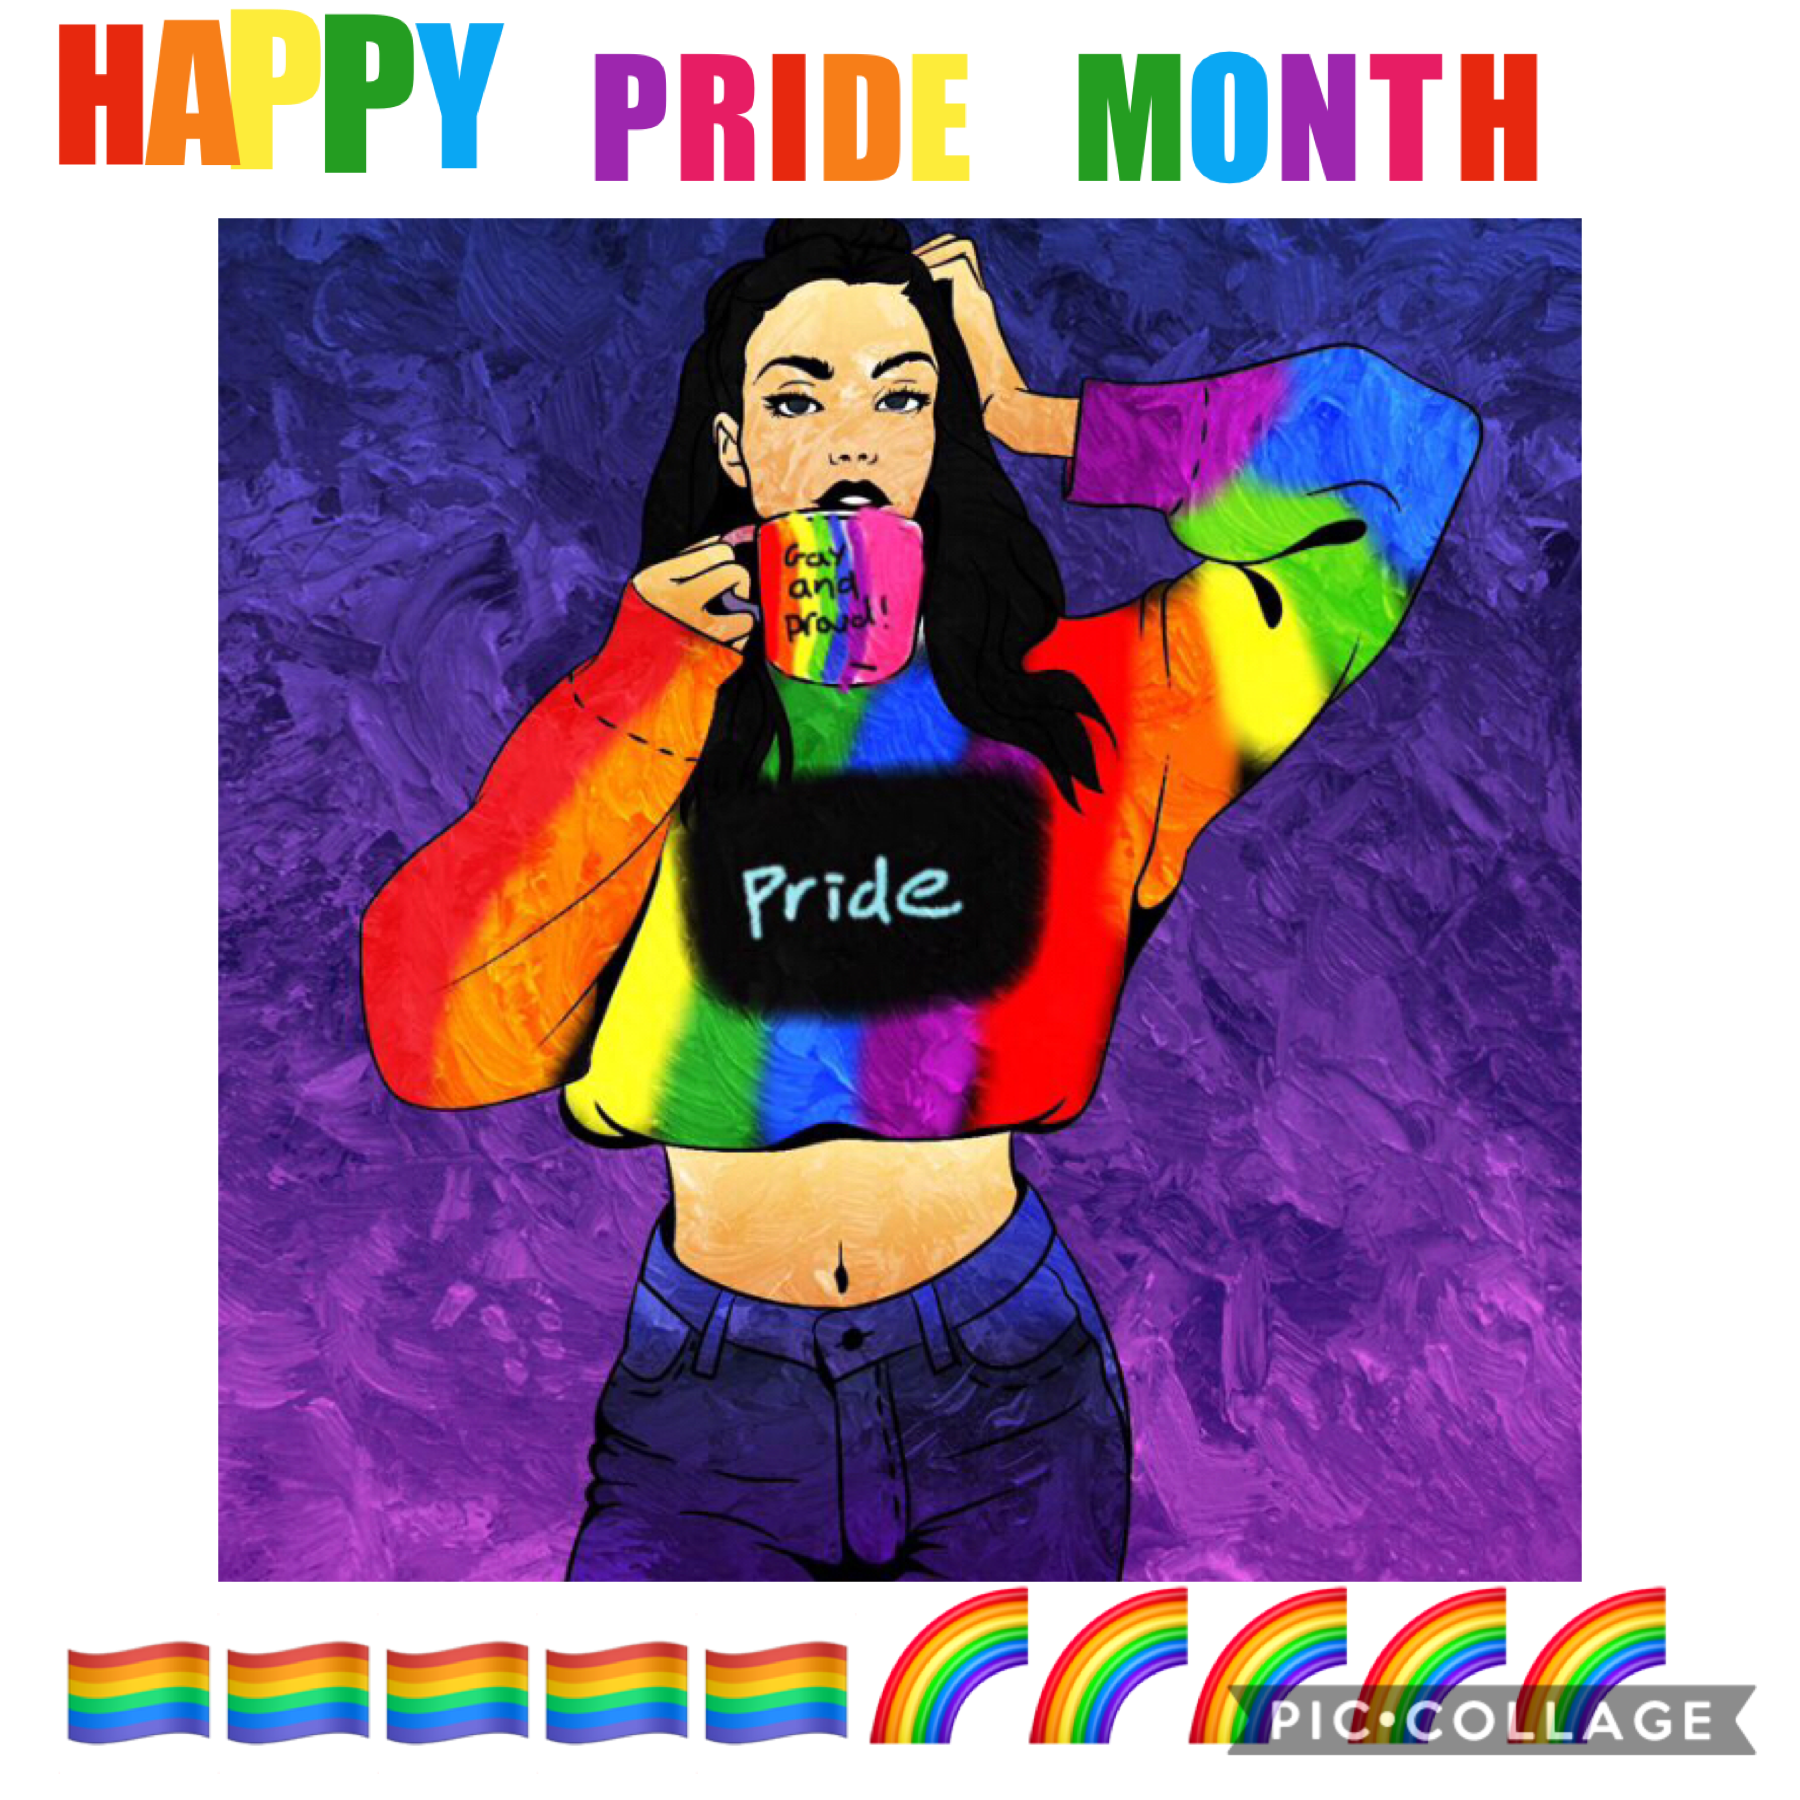 Happy pride month everyone!!!🏳️‍🌈🏳️‍🌈🏳️‍🌈🏳️‍🌈🏳️‍🌈🌈🏳️‍🌈🏳️‍🌈🏳️‍🌈🏳️‍🌈